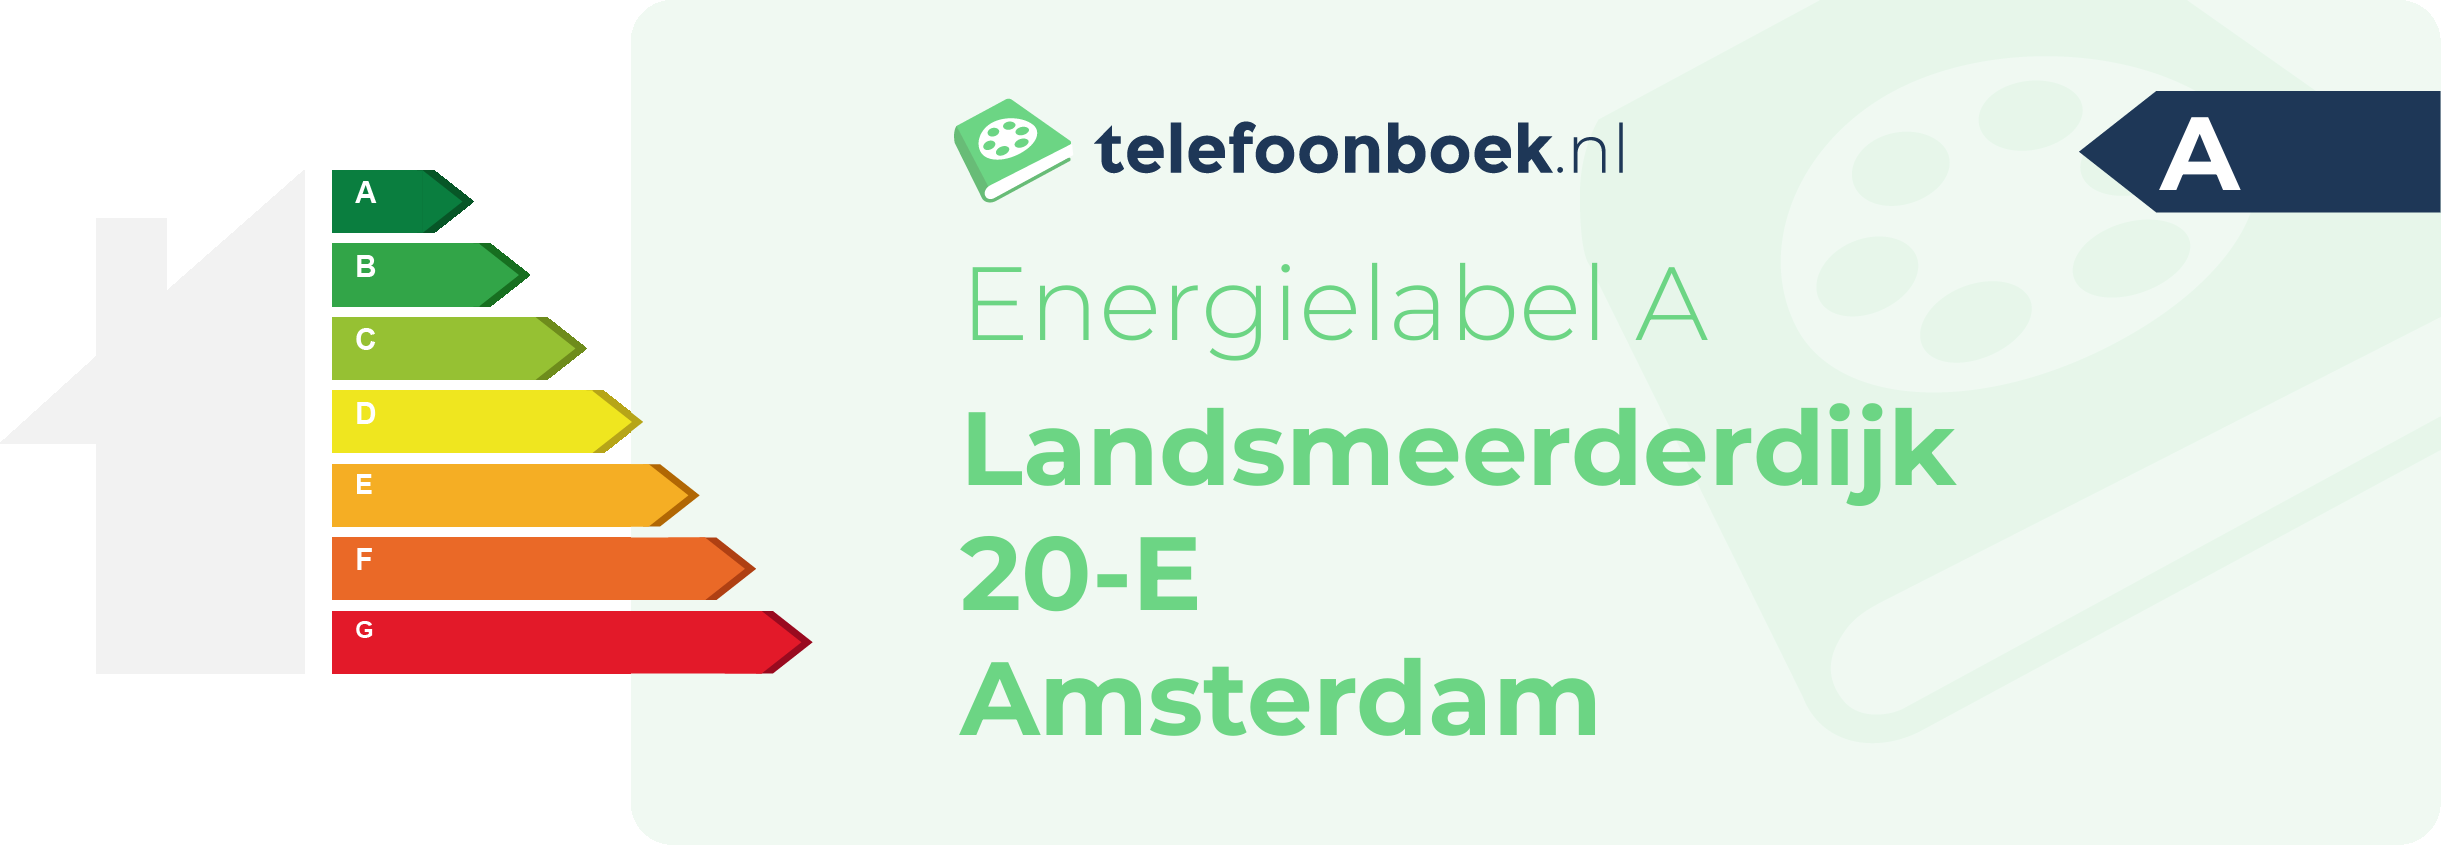 Energielabel Landsmeerderdijk 20-E Amsterdam